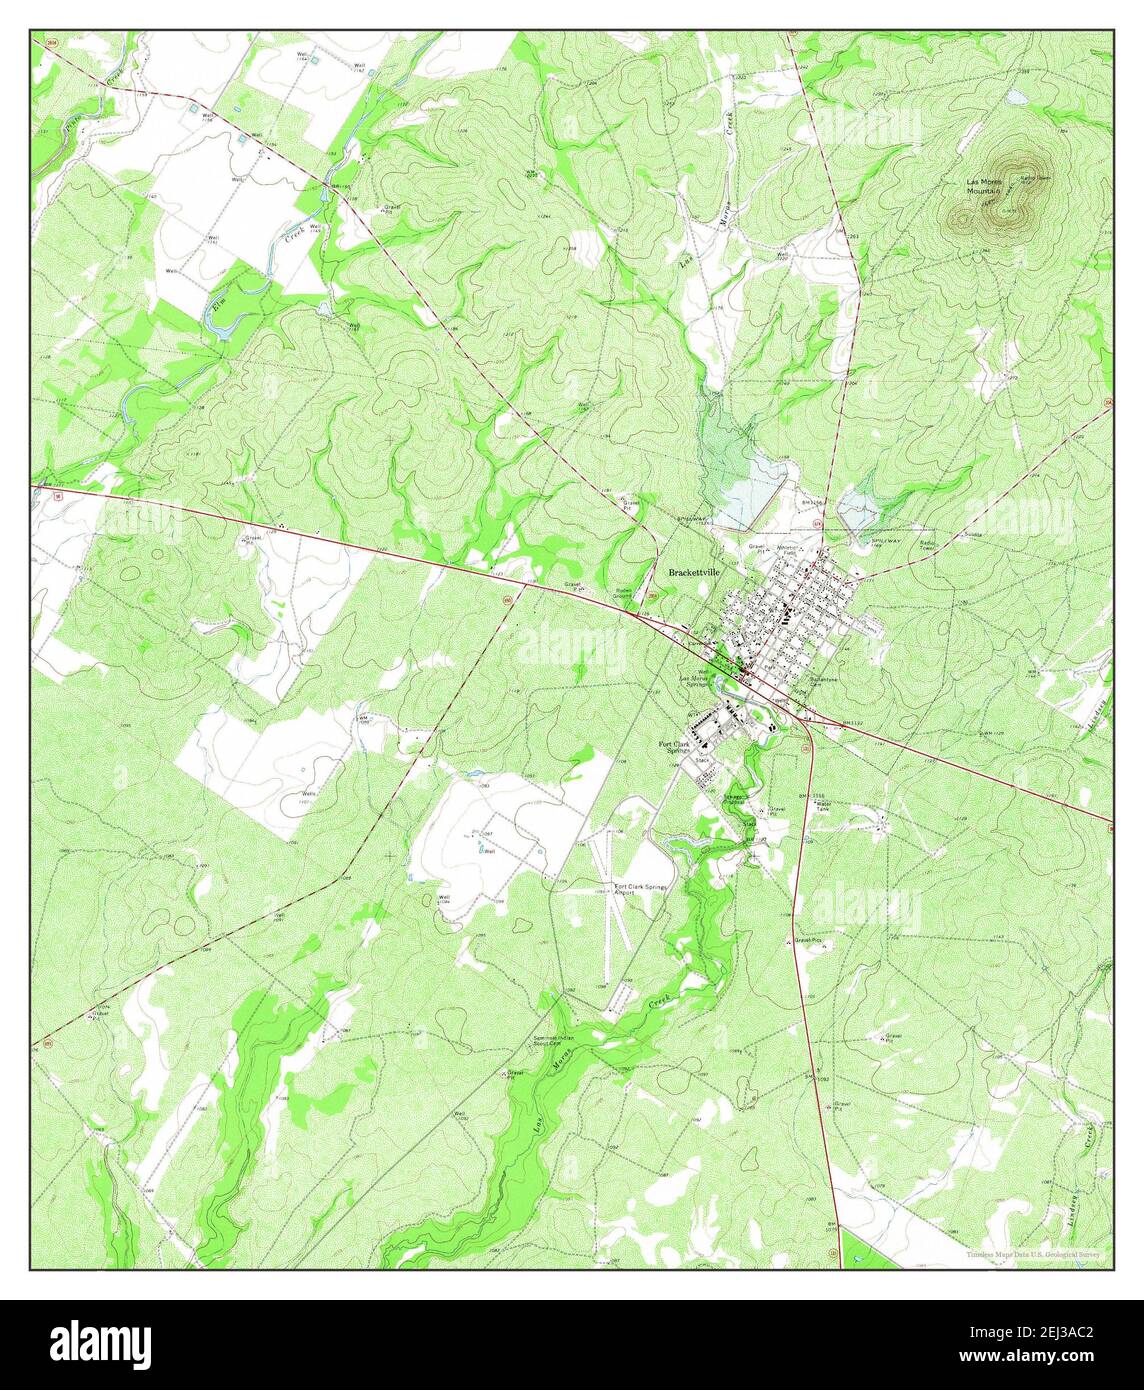 Brackettville, Texas, carte 1974, 1:24000, États-Unis d'Amérique par Timeless Maps, données U.S. Geological Survey Banque D'Images